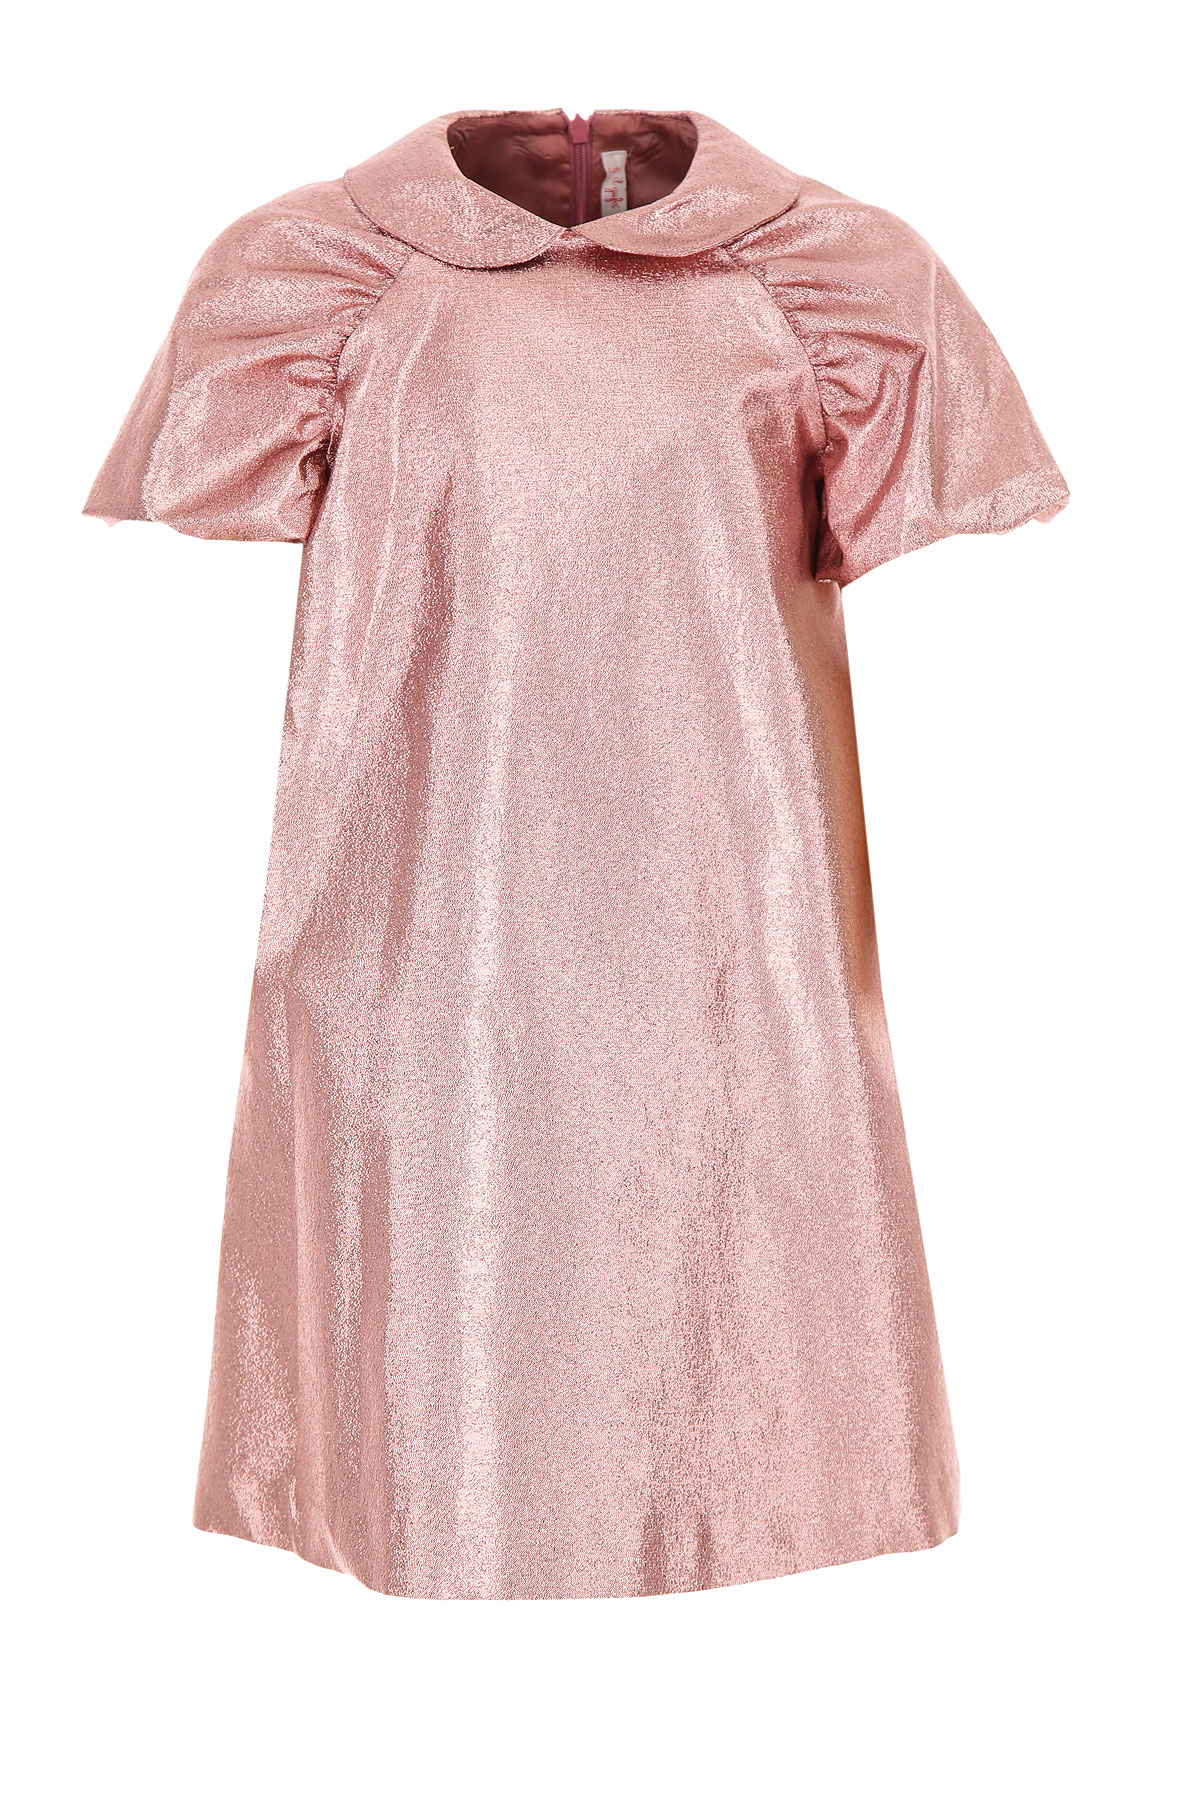 Il Gufo Kleid für Mädchen Günstig im Sale, Pink, Azetat, 2017, 6Y 8Y